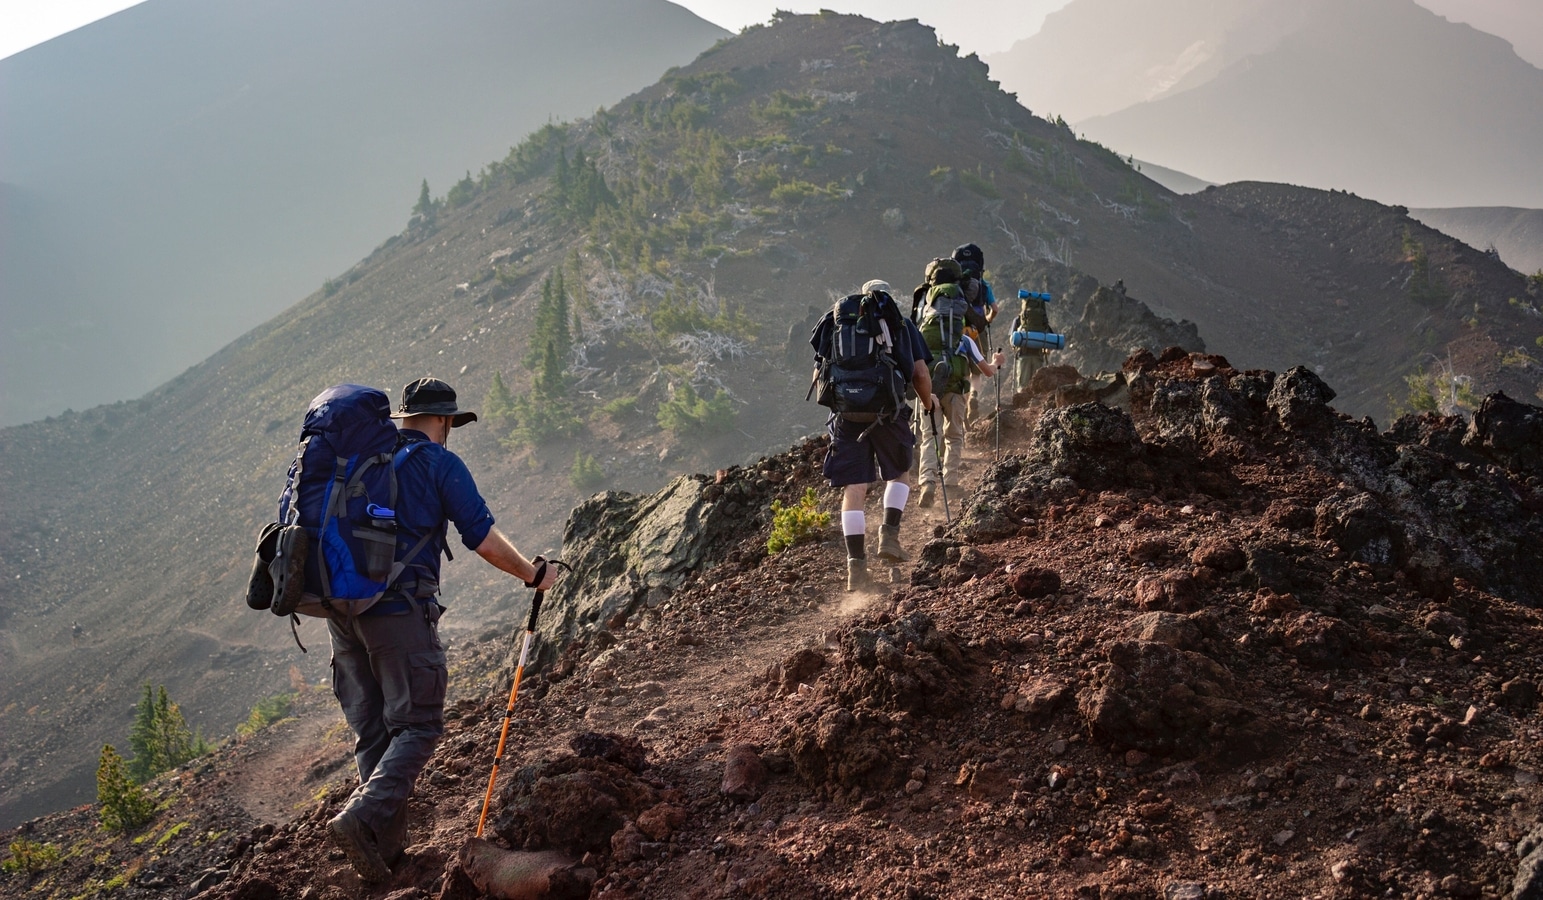 Türkiye dağlarında trekking, Hintli gezginler arasında popülerdir.  İşte nedeni  seyahat